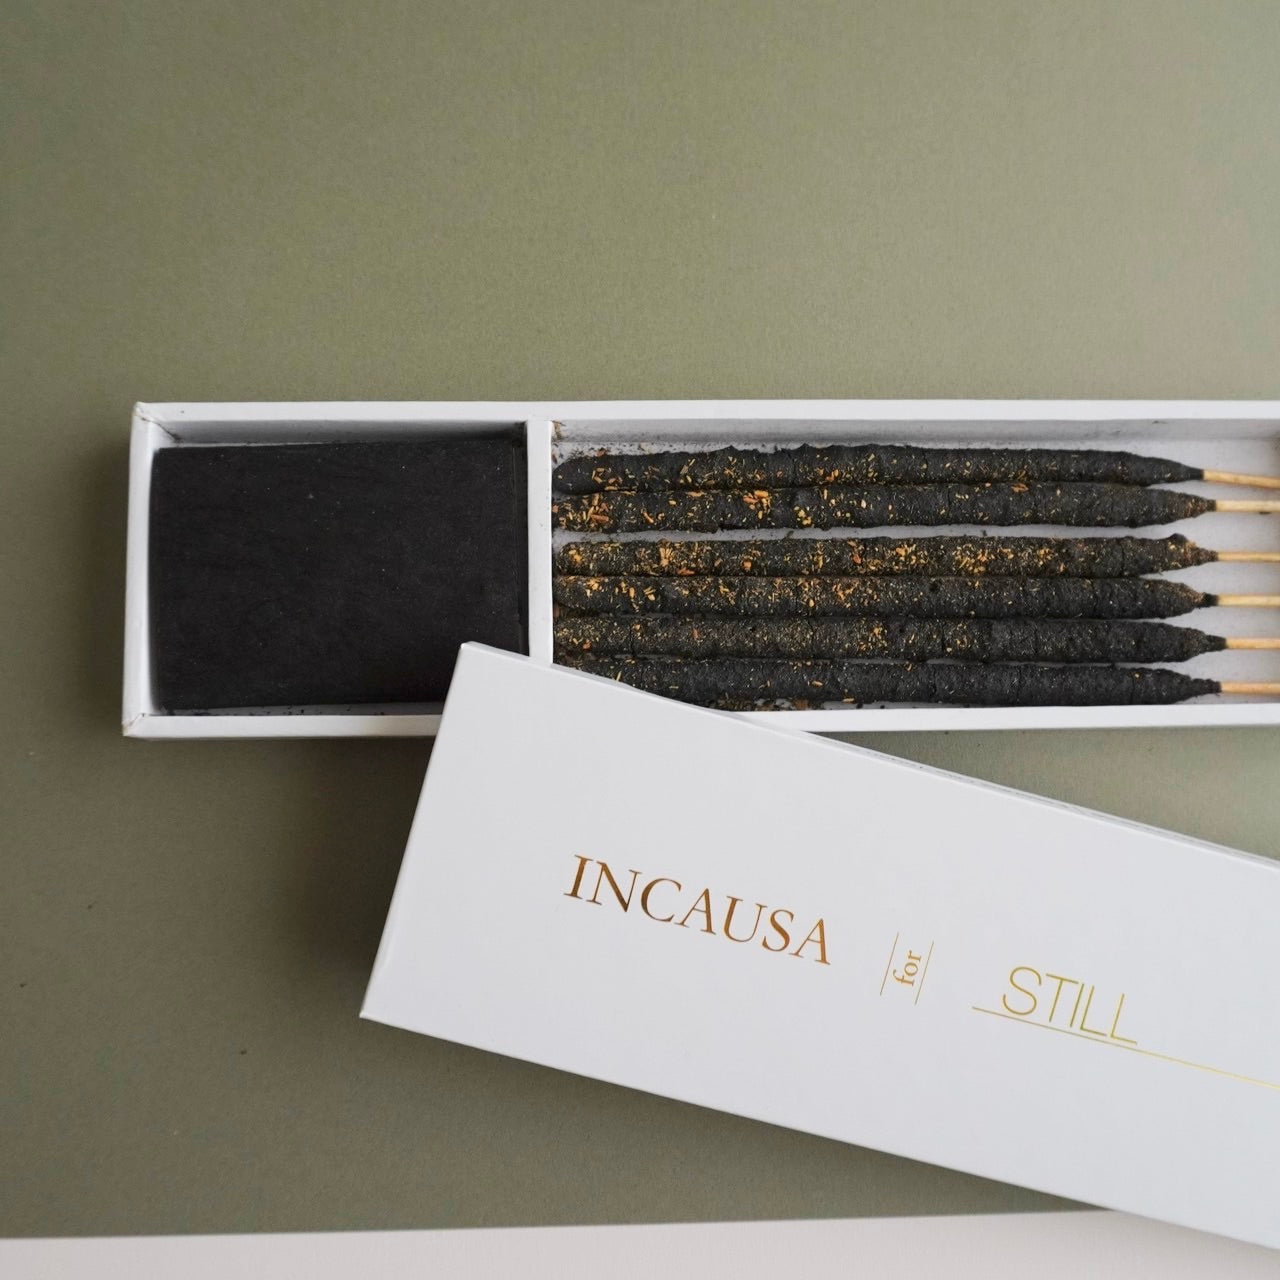 Incausa for Still Set: Incense & Soap Refill box